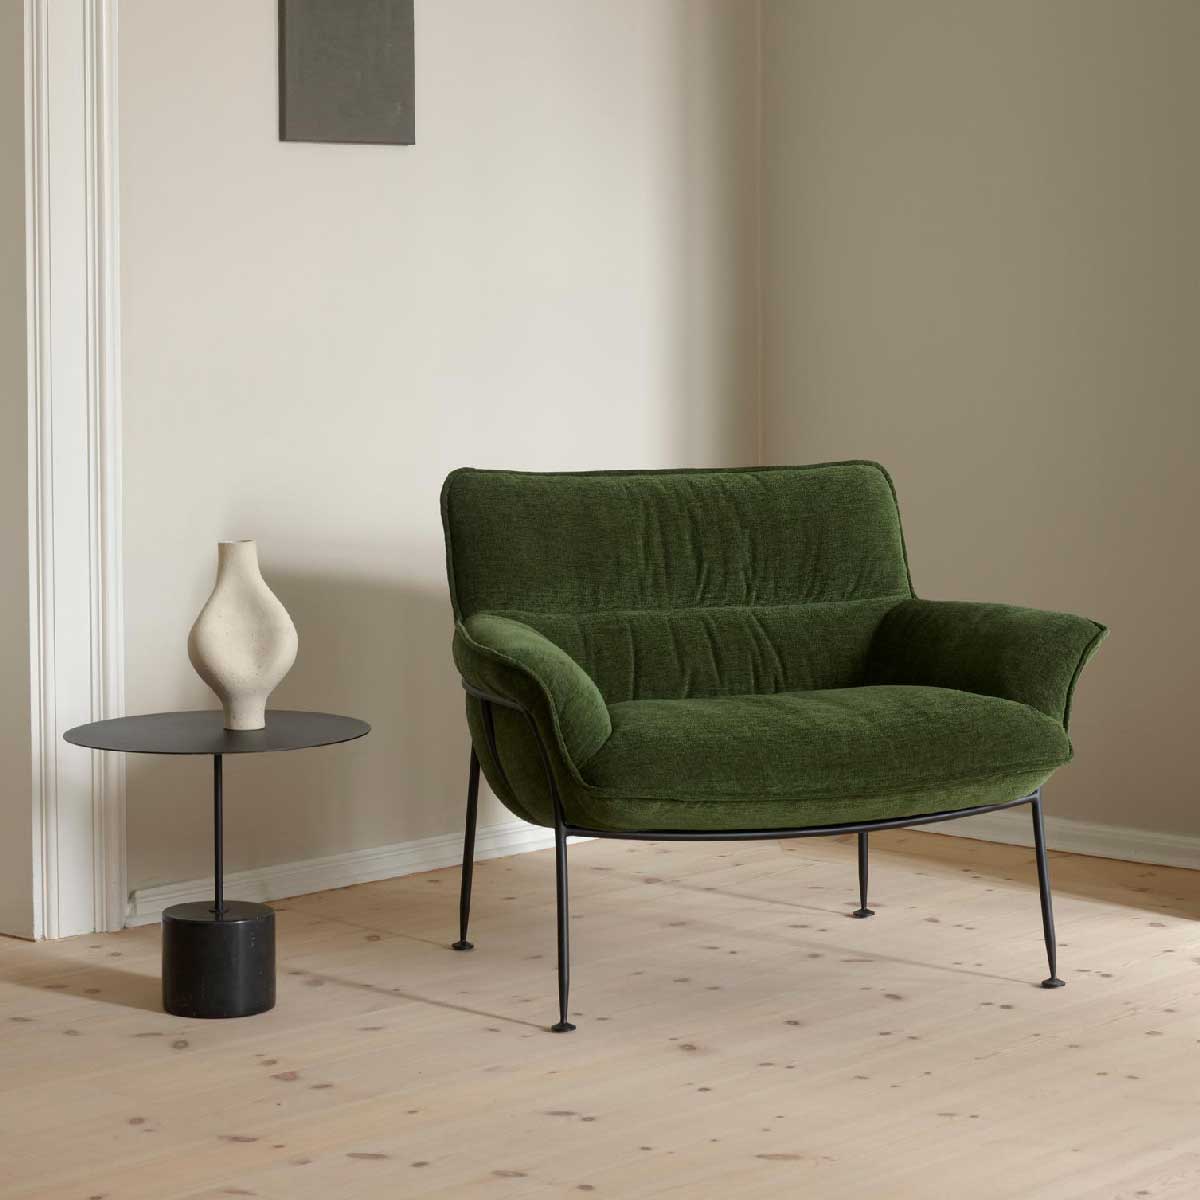 丹麥單椅. 極簡單椅, wendelbo單椅, 丹麥設計單椅, 設計單椅, 設計休閒椅,